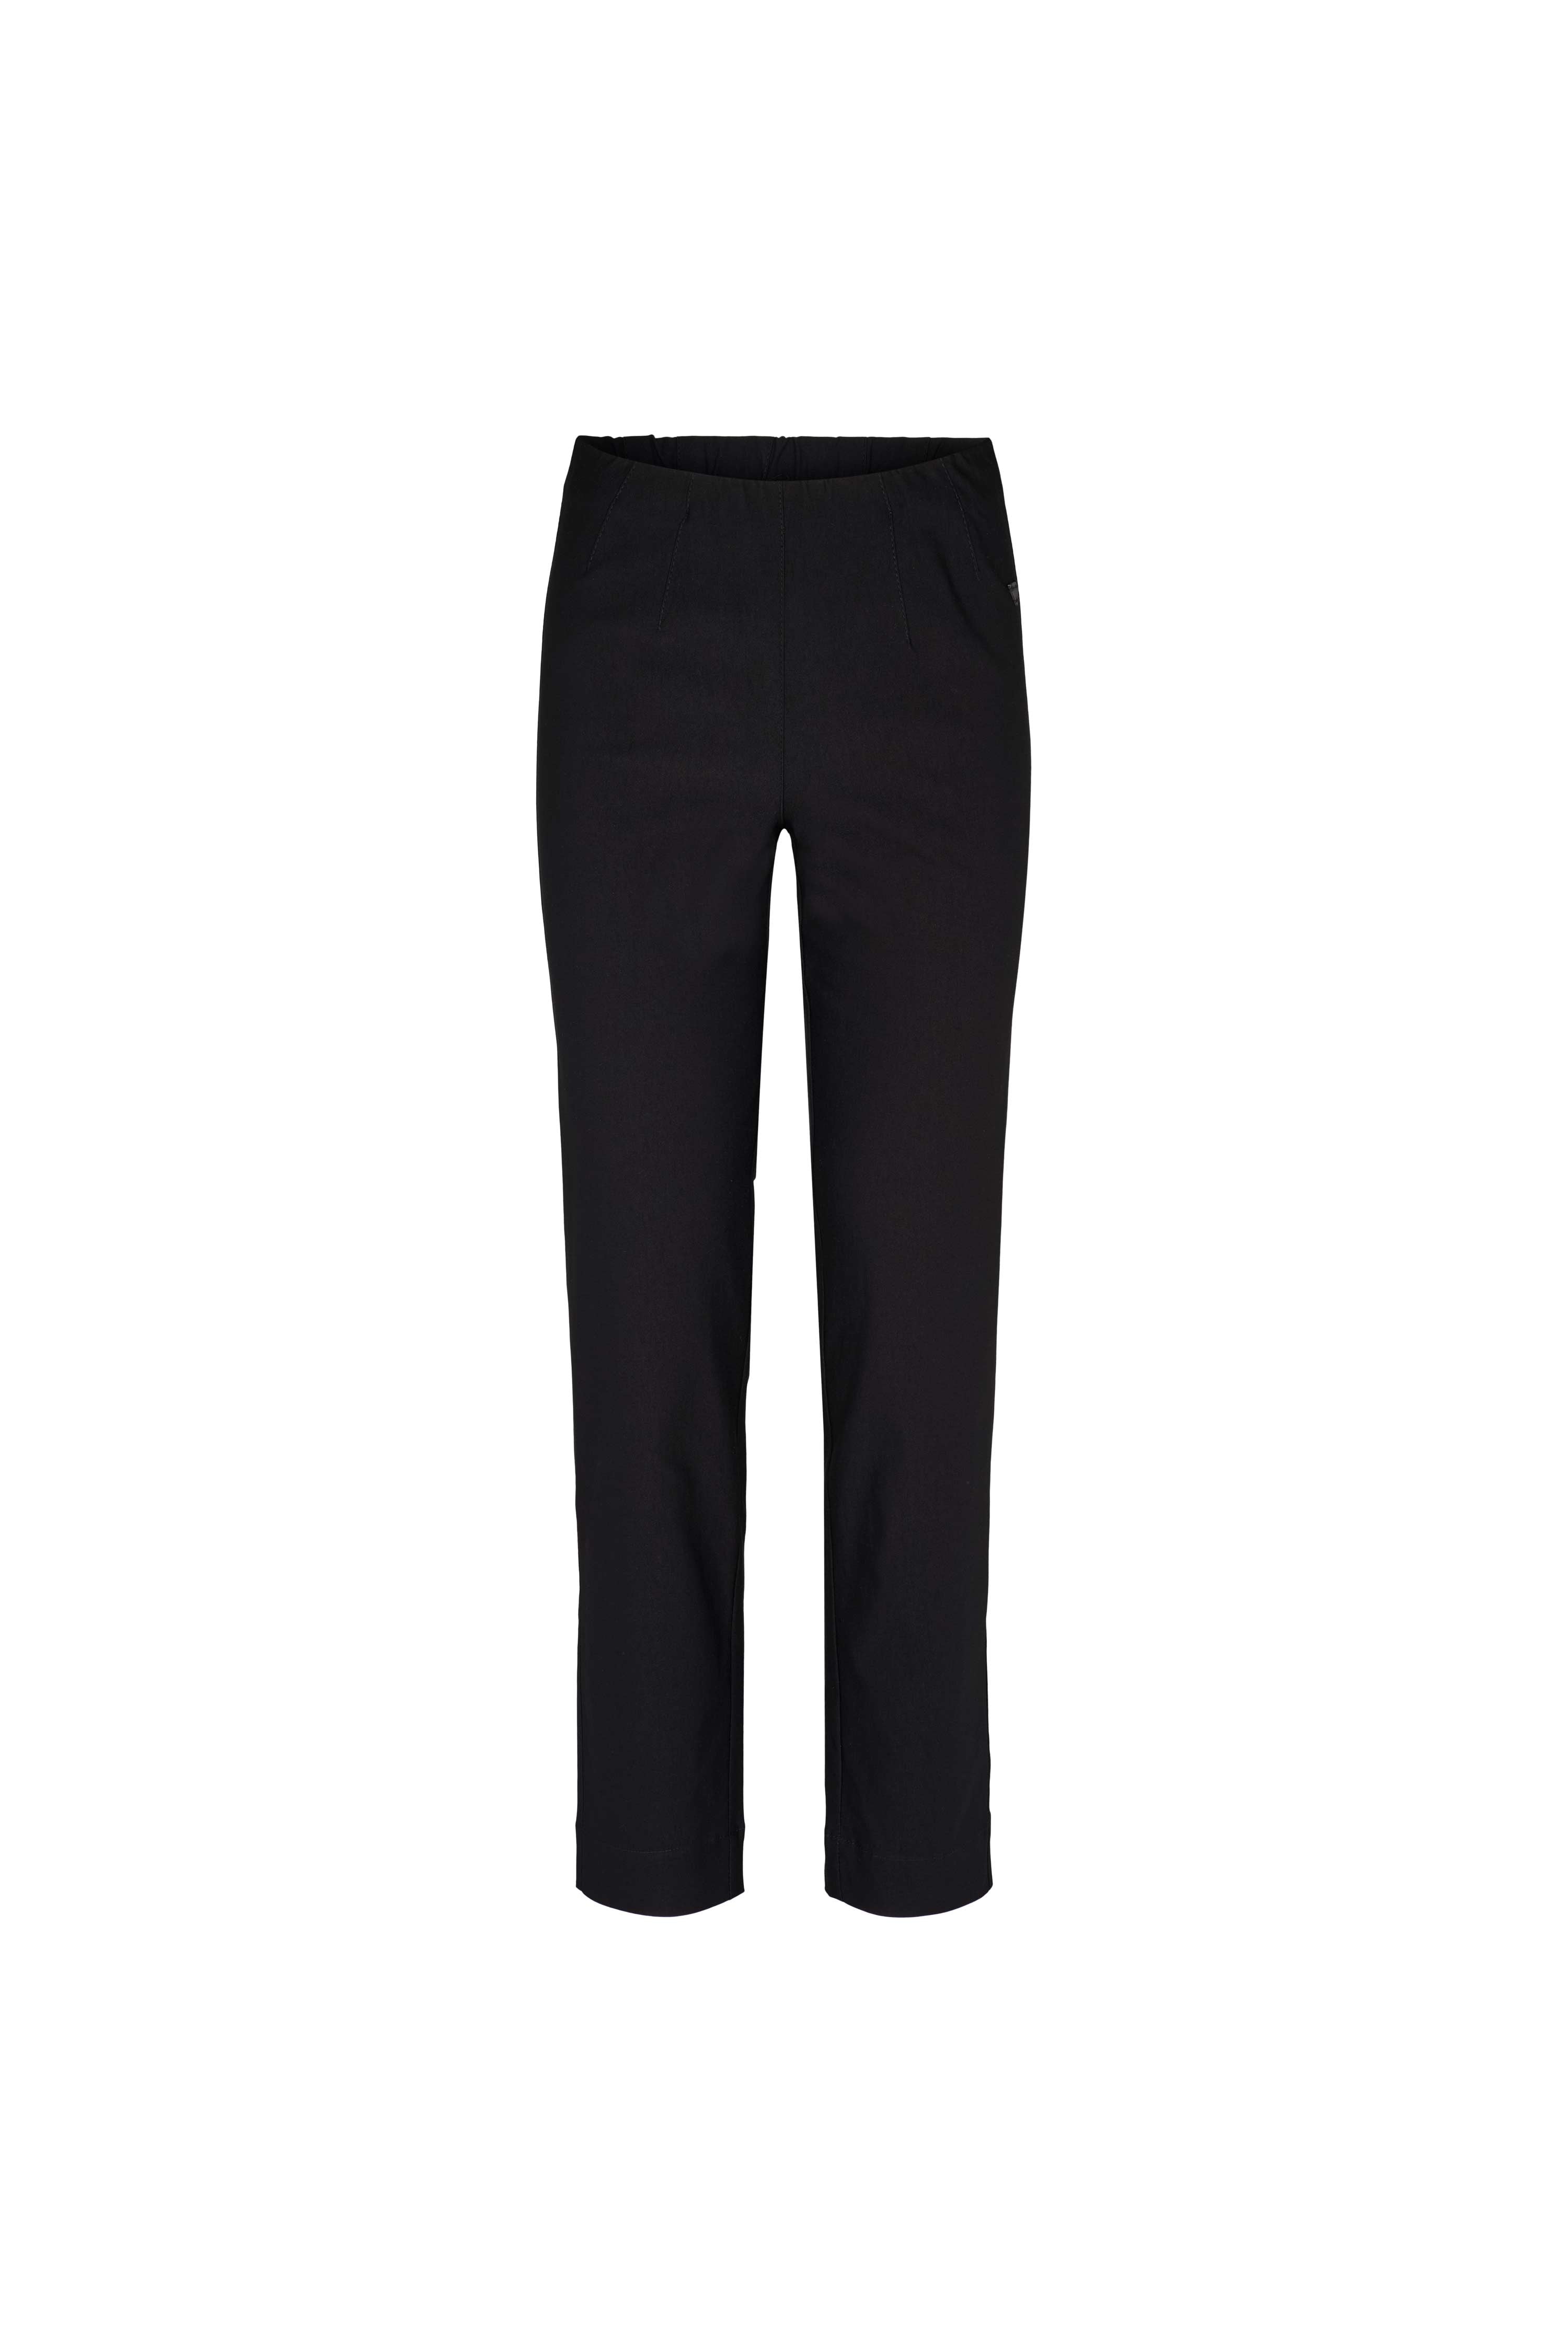 LAURIE  Betty Regular - Short Length Trousers REGULAR 99970 Black